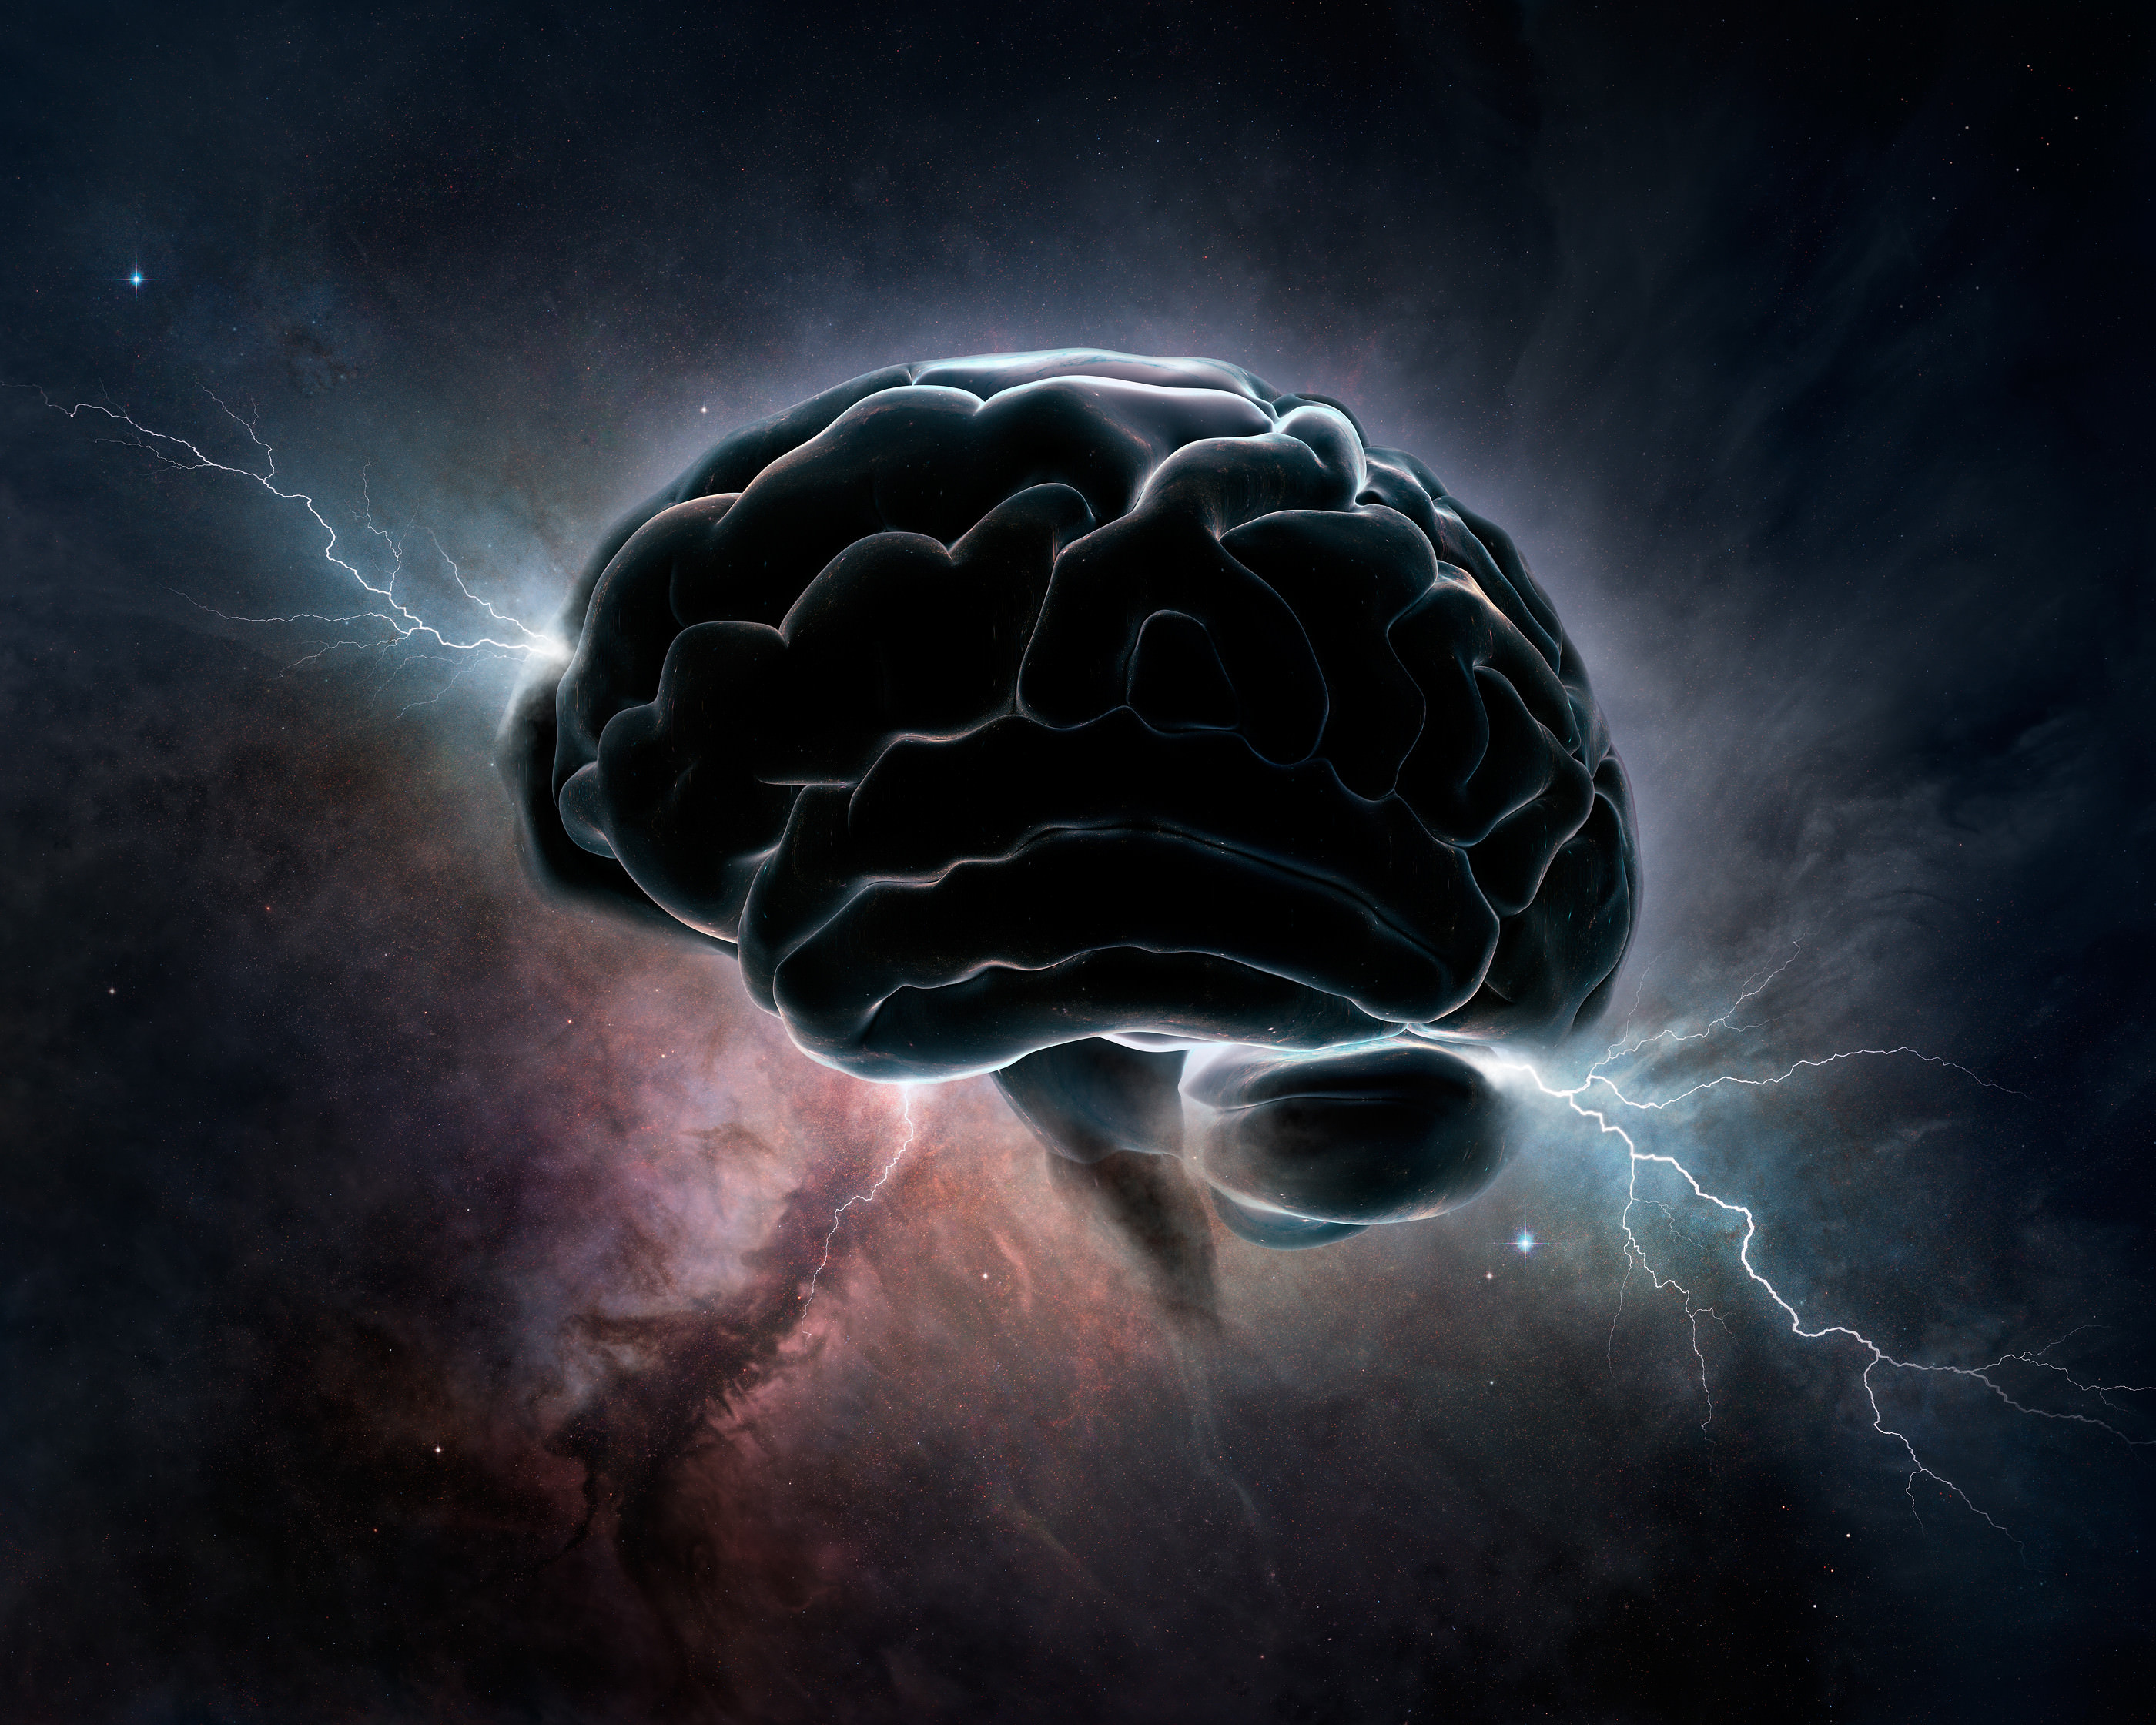 玻尔兹曼大脑：宇宙中或至少漂浮着7万5千亿亿亿...个意识体